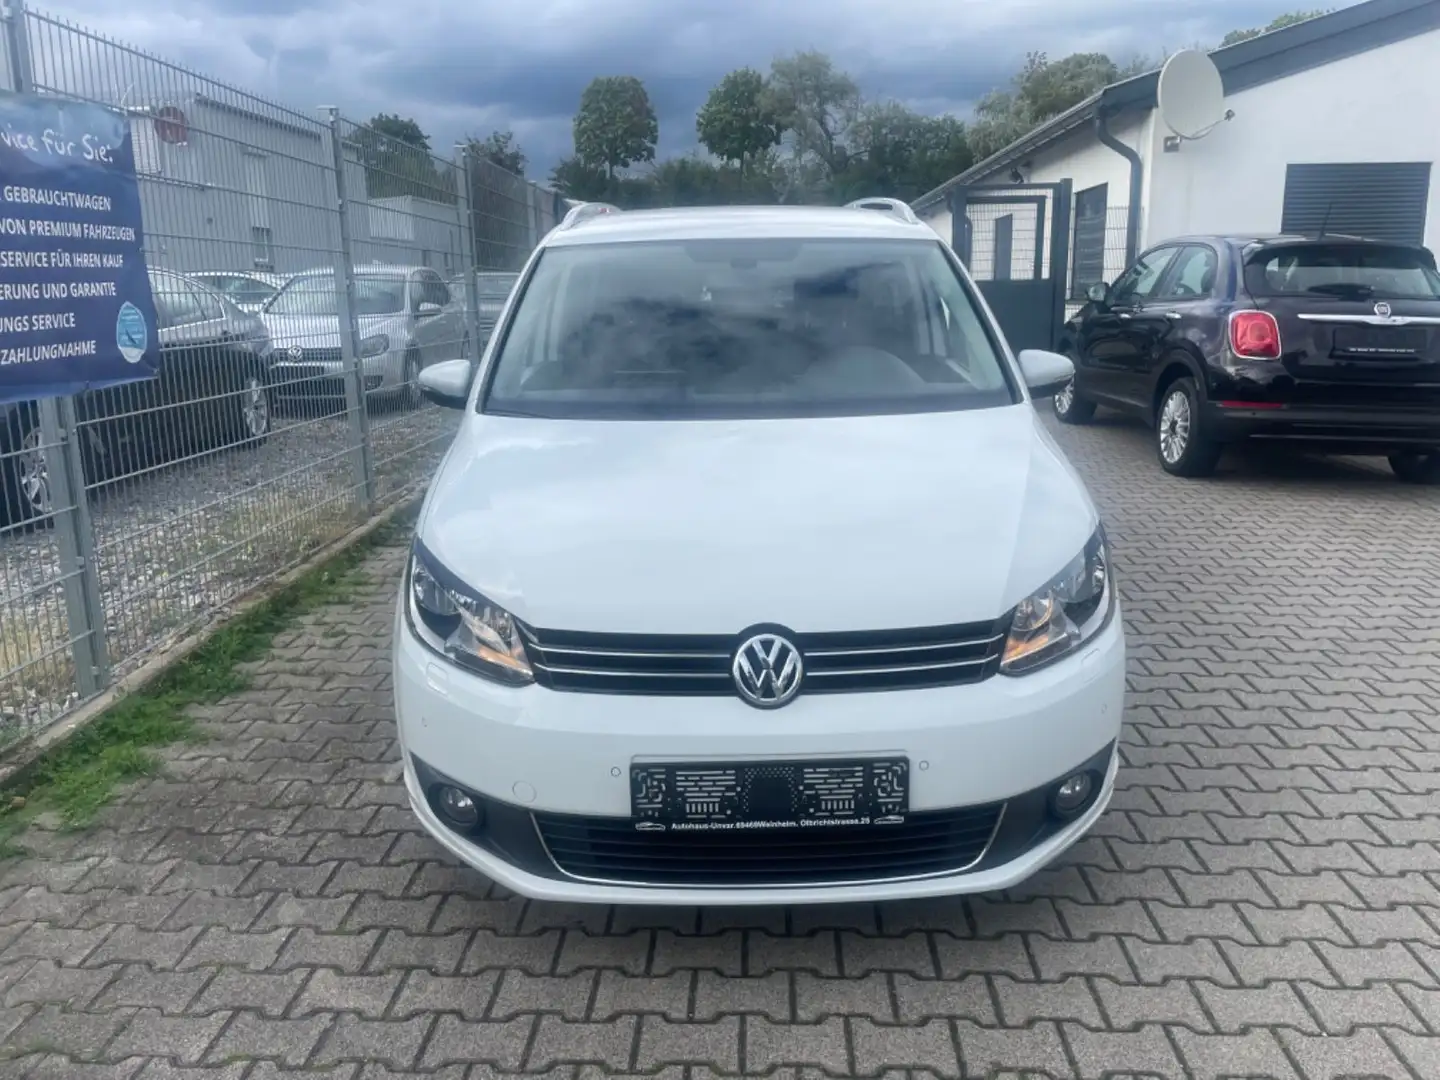 Volkswagen Touran Van/Kleinbus in Weiß gebraucht in Weinheim für